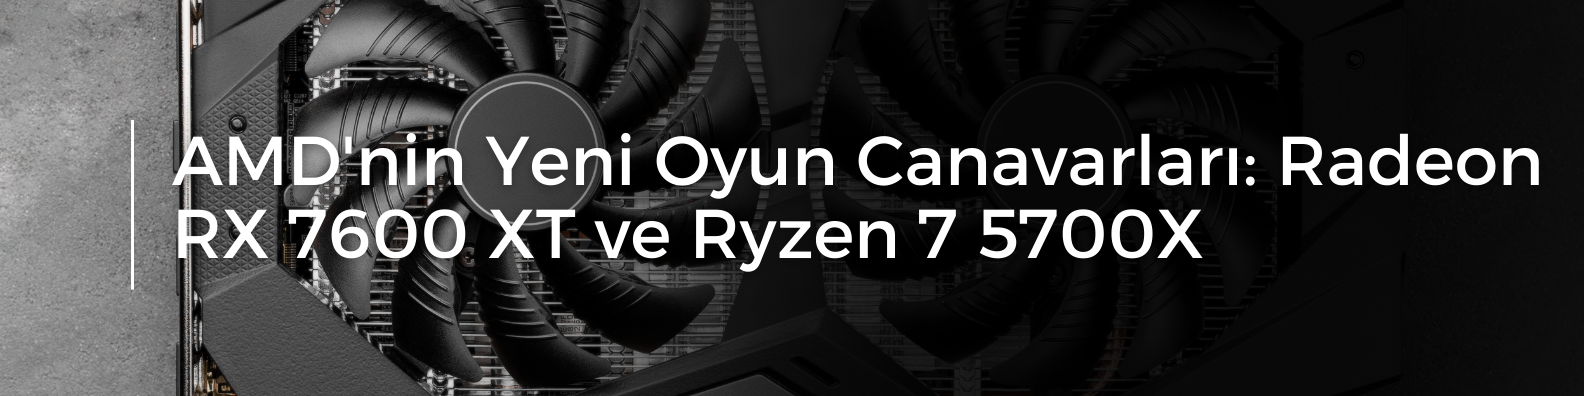 AMD'nin Yeni Oyun Canavarları Radeon RX 7600 XT ve Ryzen 7 5700X.png